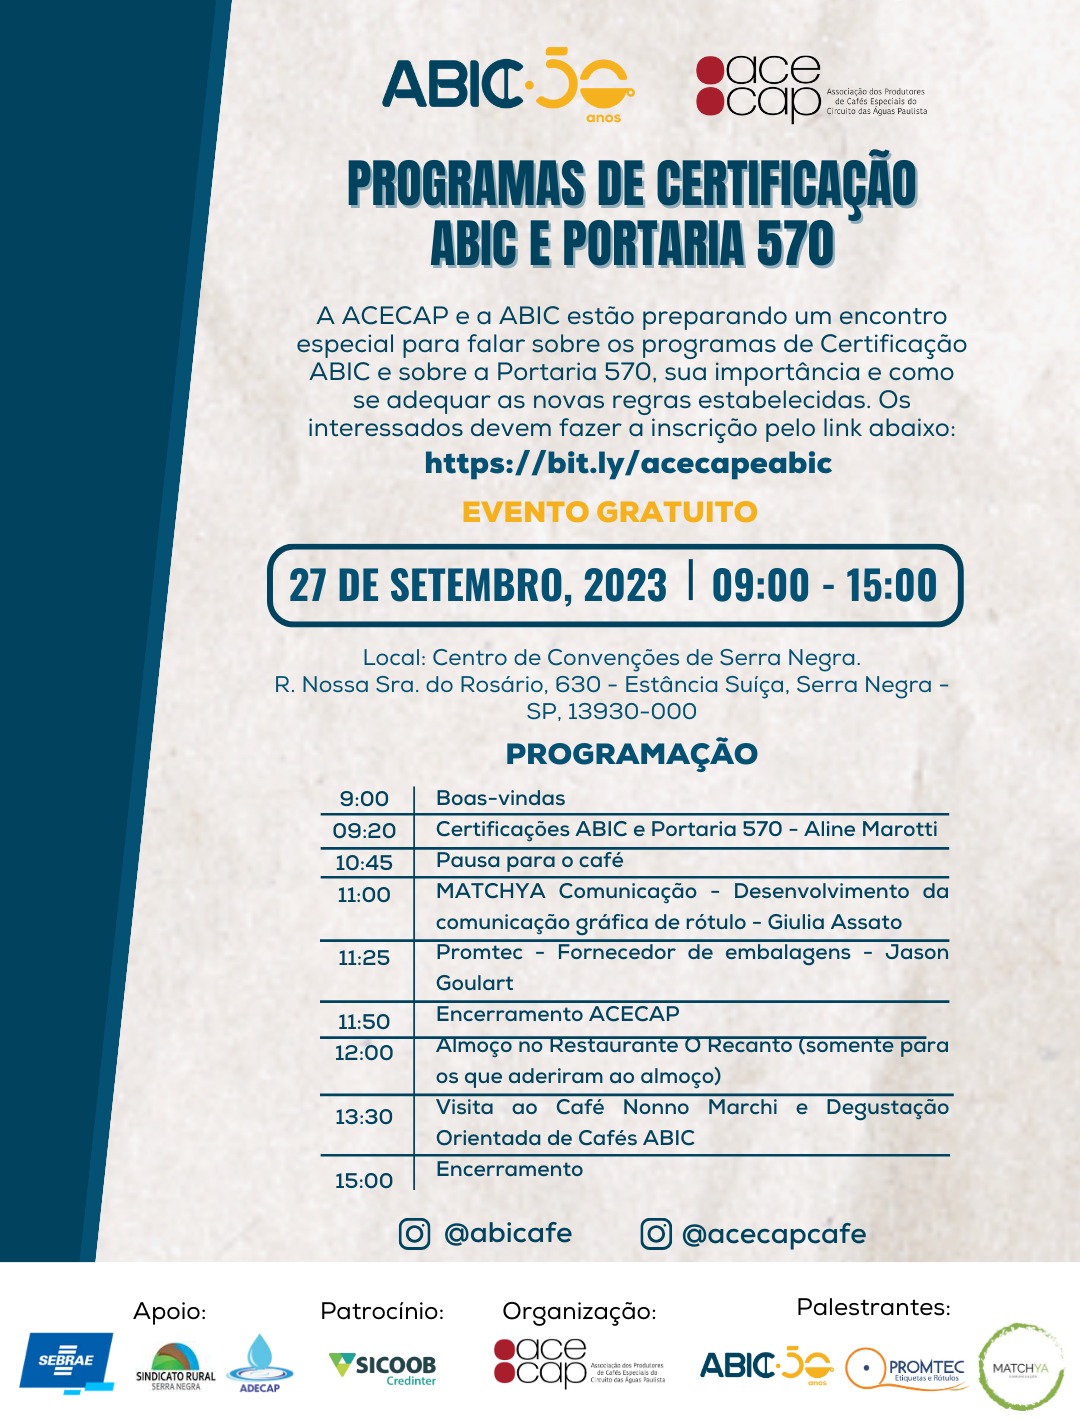 Workshop gratuito sobre Certificações ABIC e a nova Portaria 570 acontece em Serra Negra